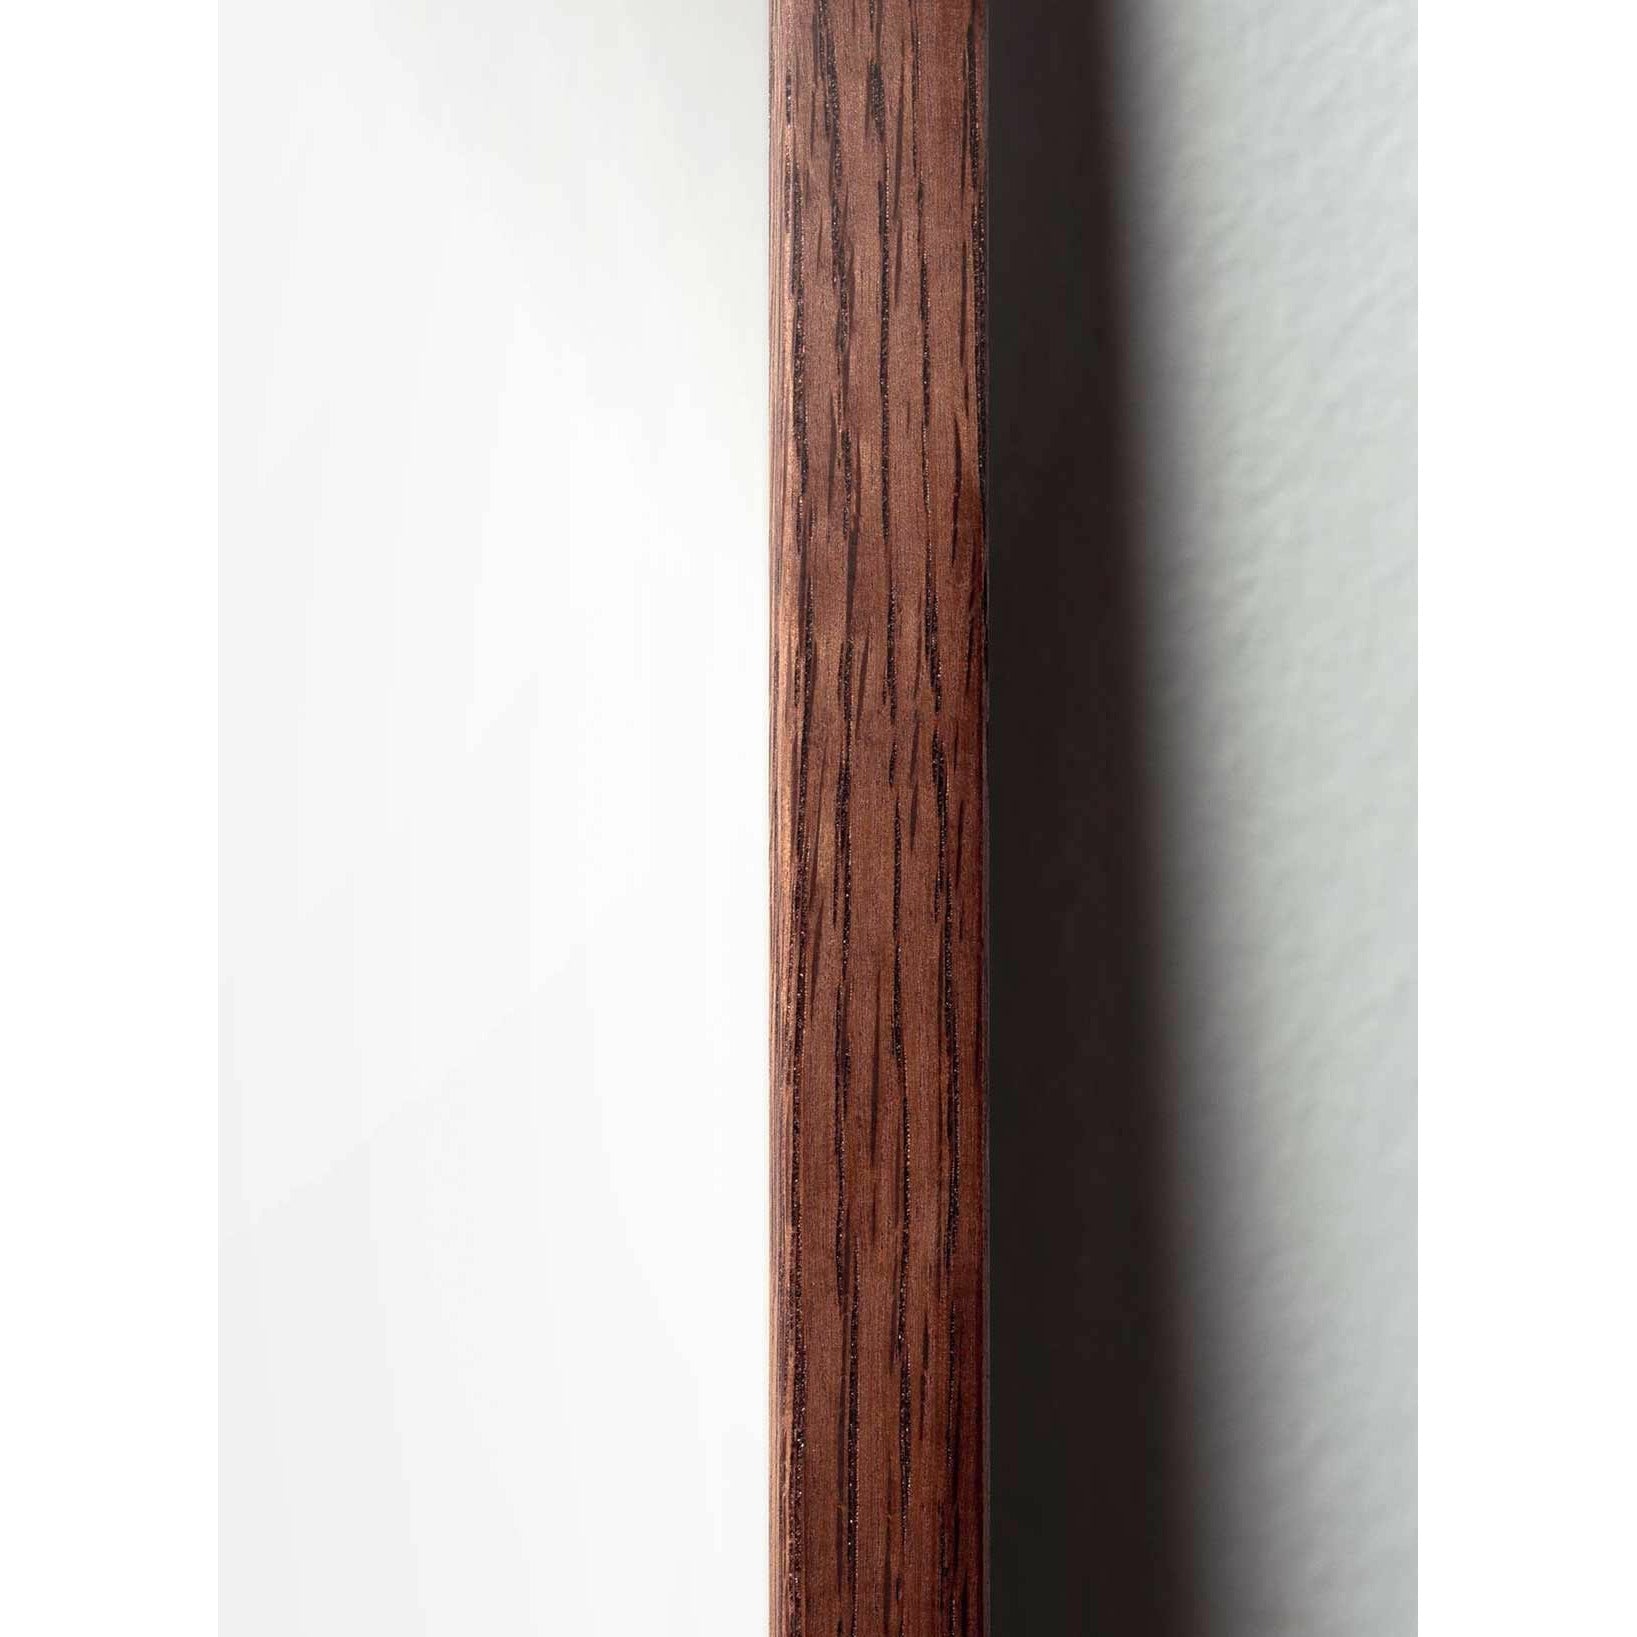 Poster della linea del cono di pino da un'idea, cornice in legno scuro A5, sfondo bianco